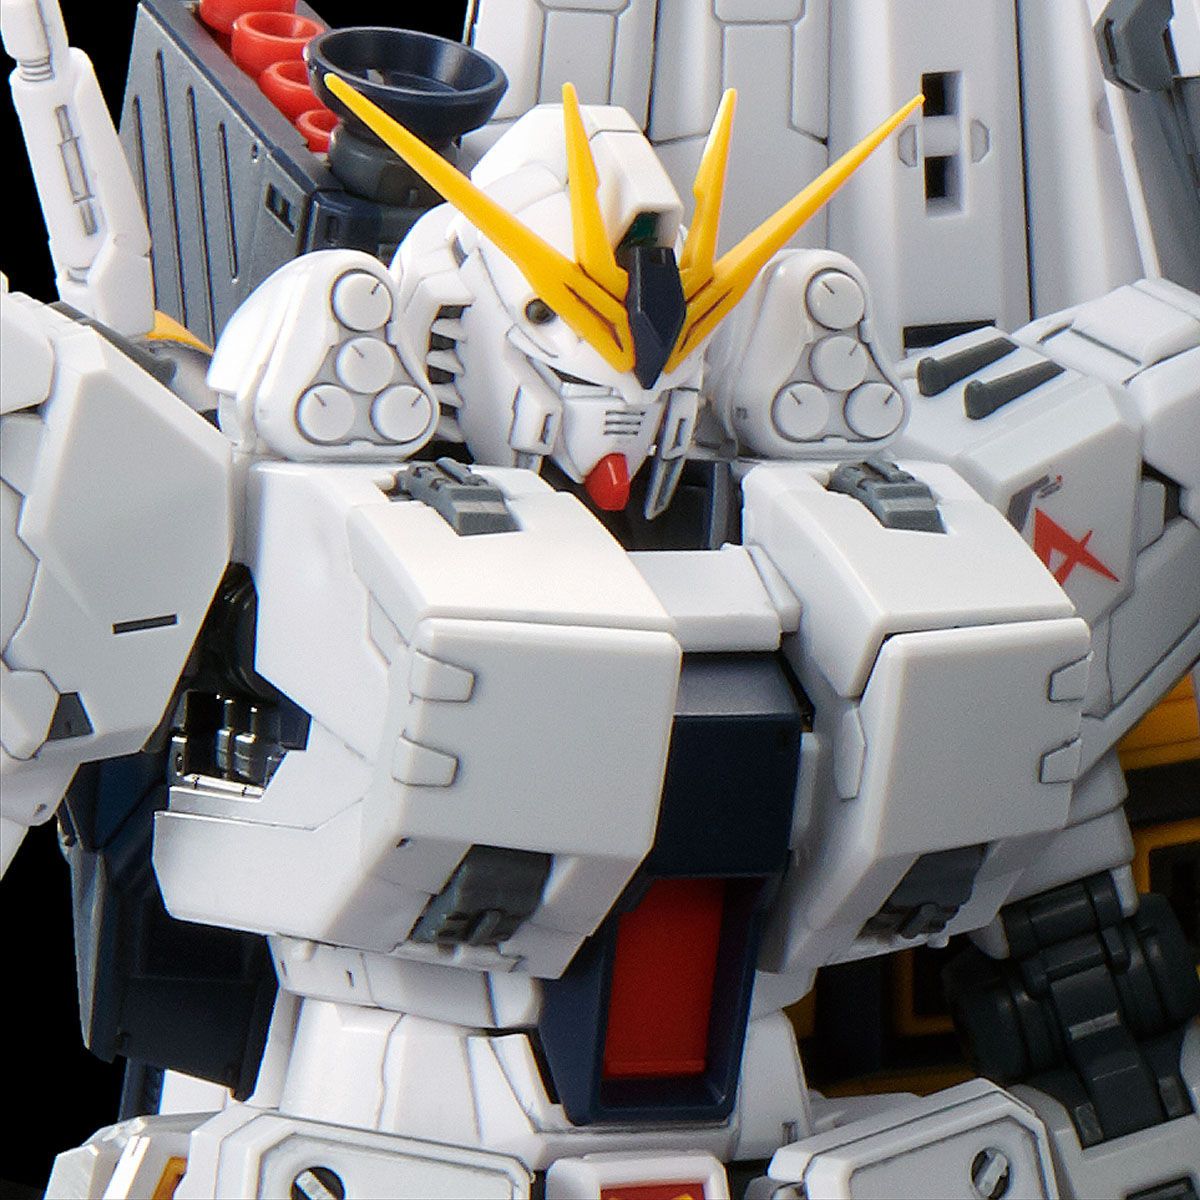 1/144 RG Nu Gundam